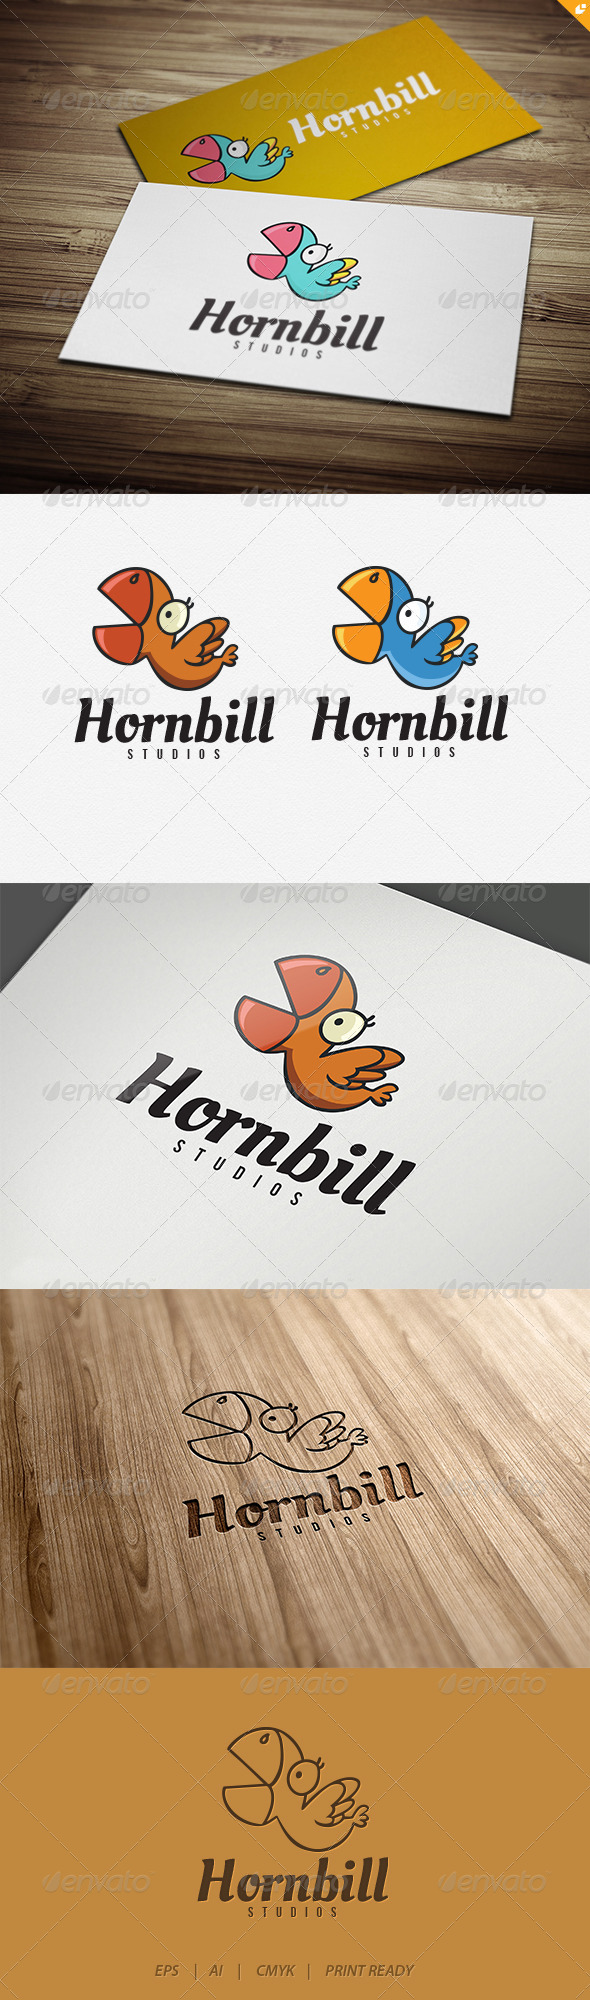 Hornbill Logo